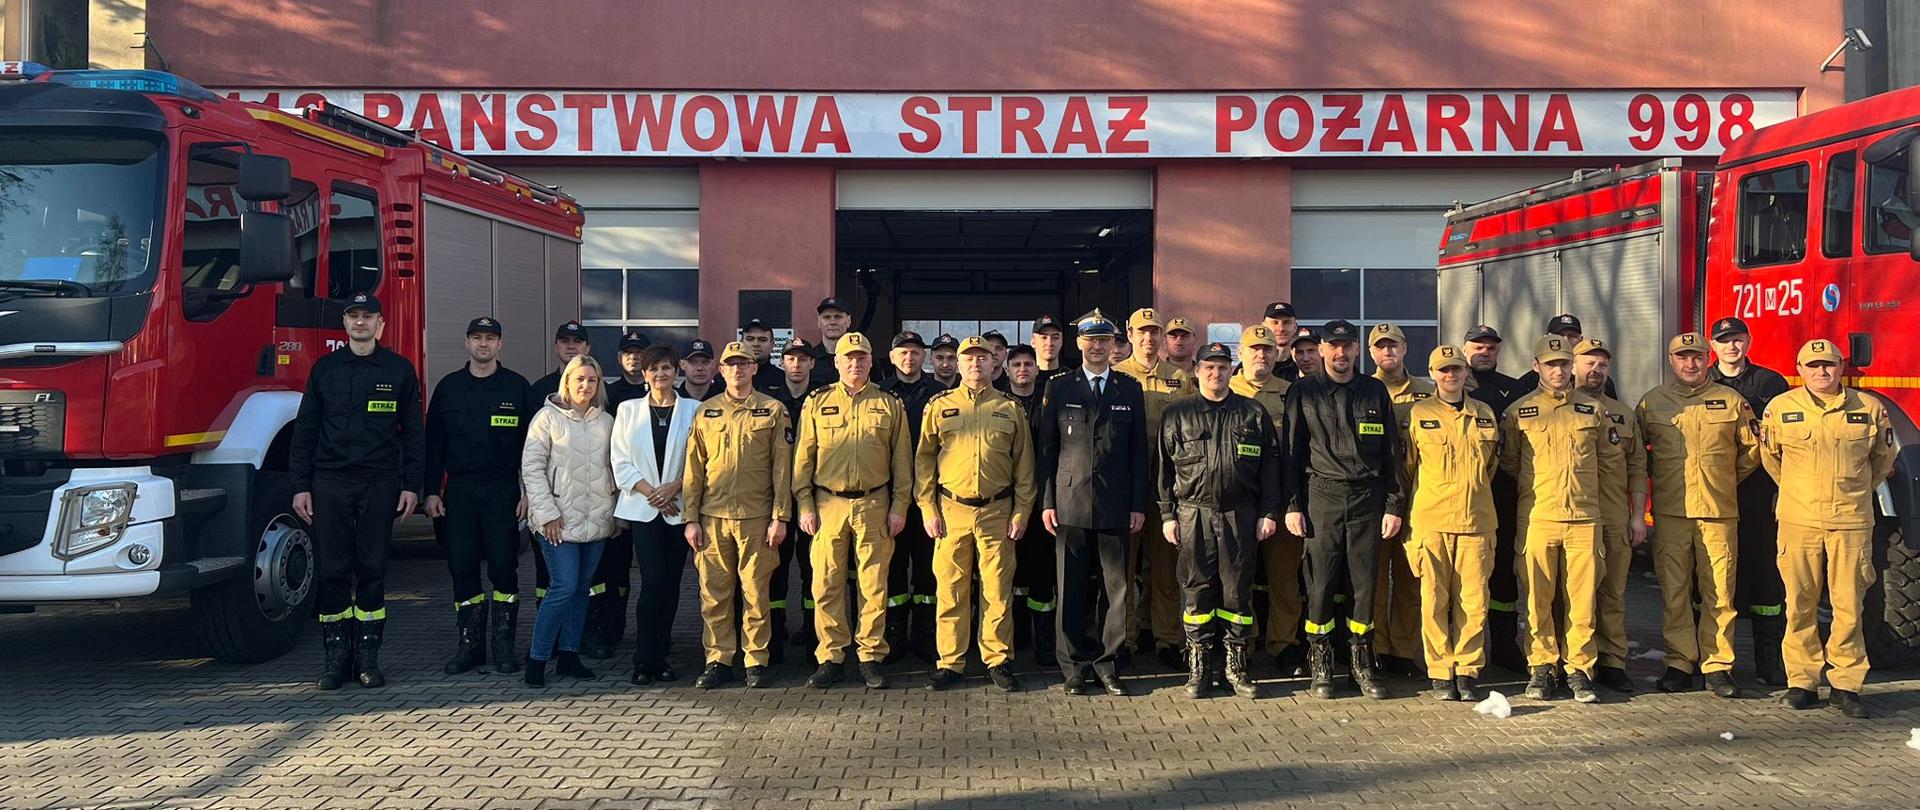 Pamiątkowe zdjęcie strażaków przed Komendą Powiatową Państwowej Straży Pożarnej w Żyrardowie